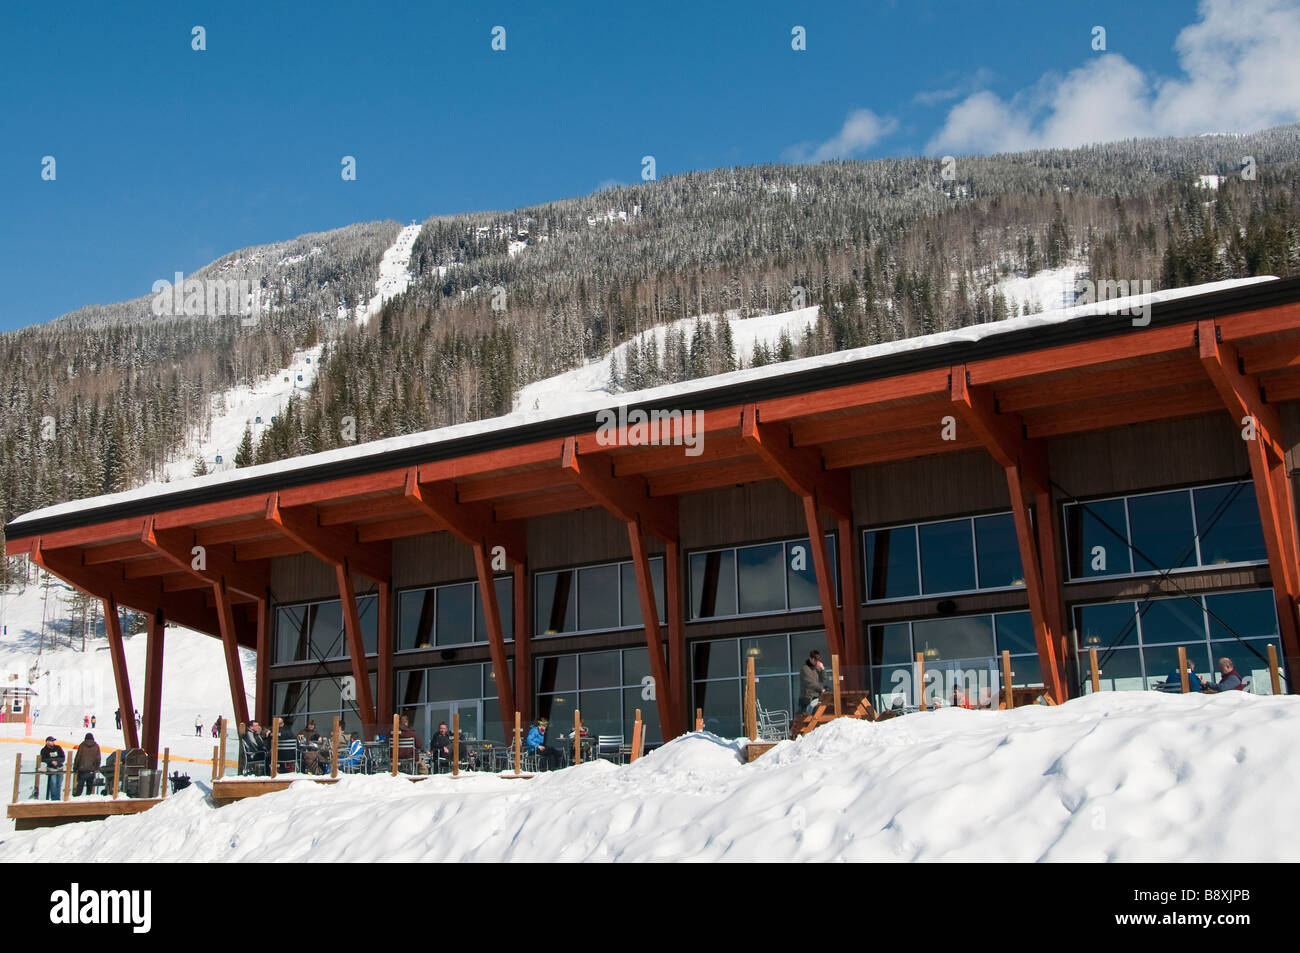 Day Lodge, Revelstoke Mountain Resort, Revelstoke, British Columbia, Canada. Stock Photo